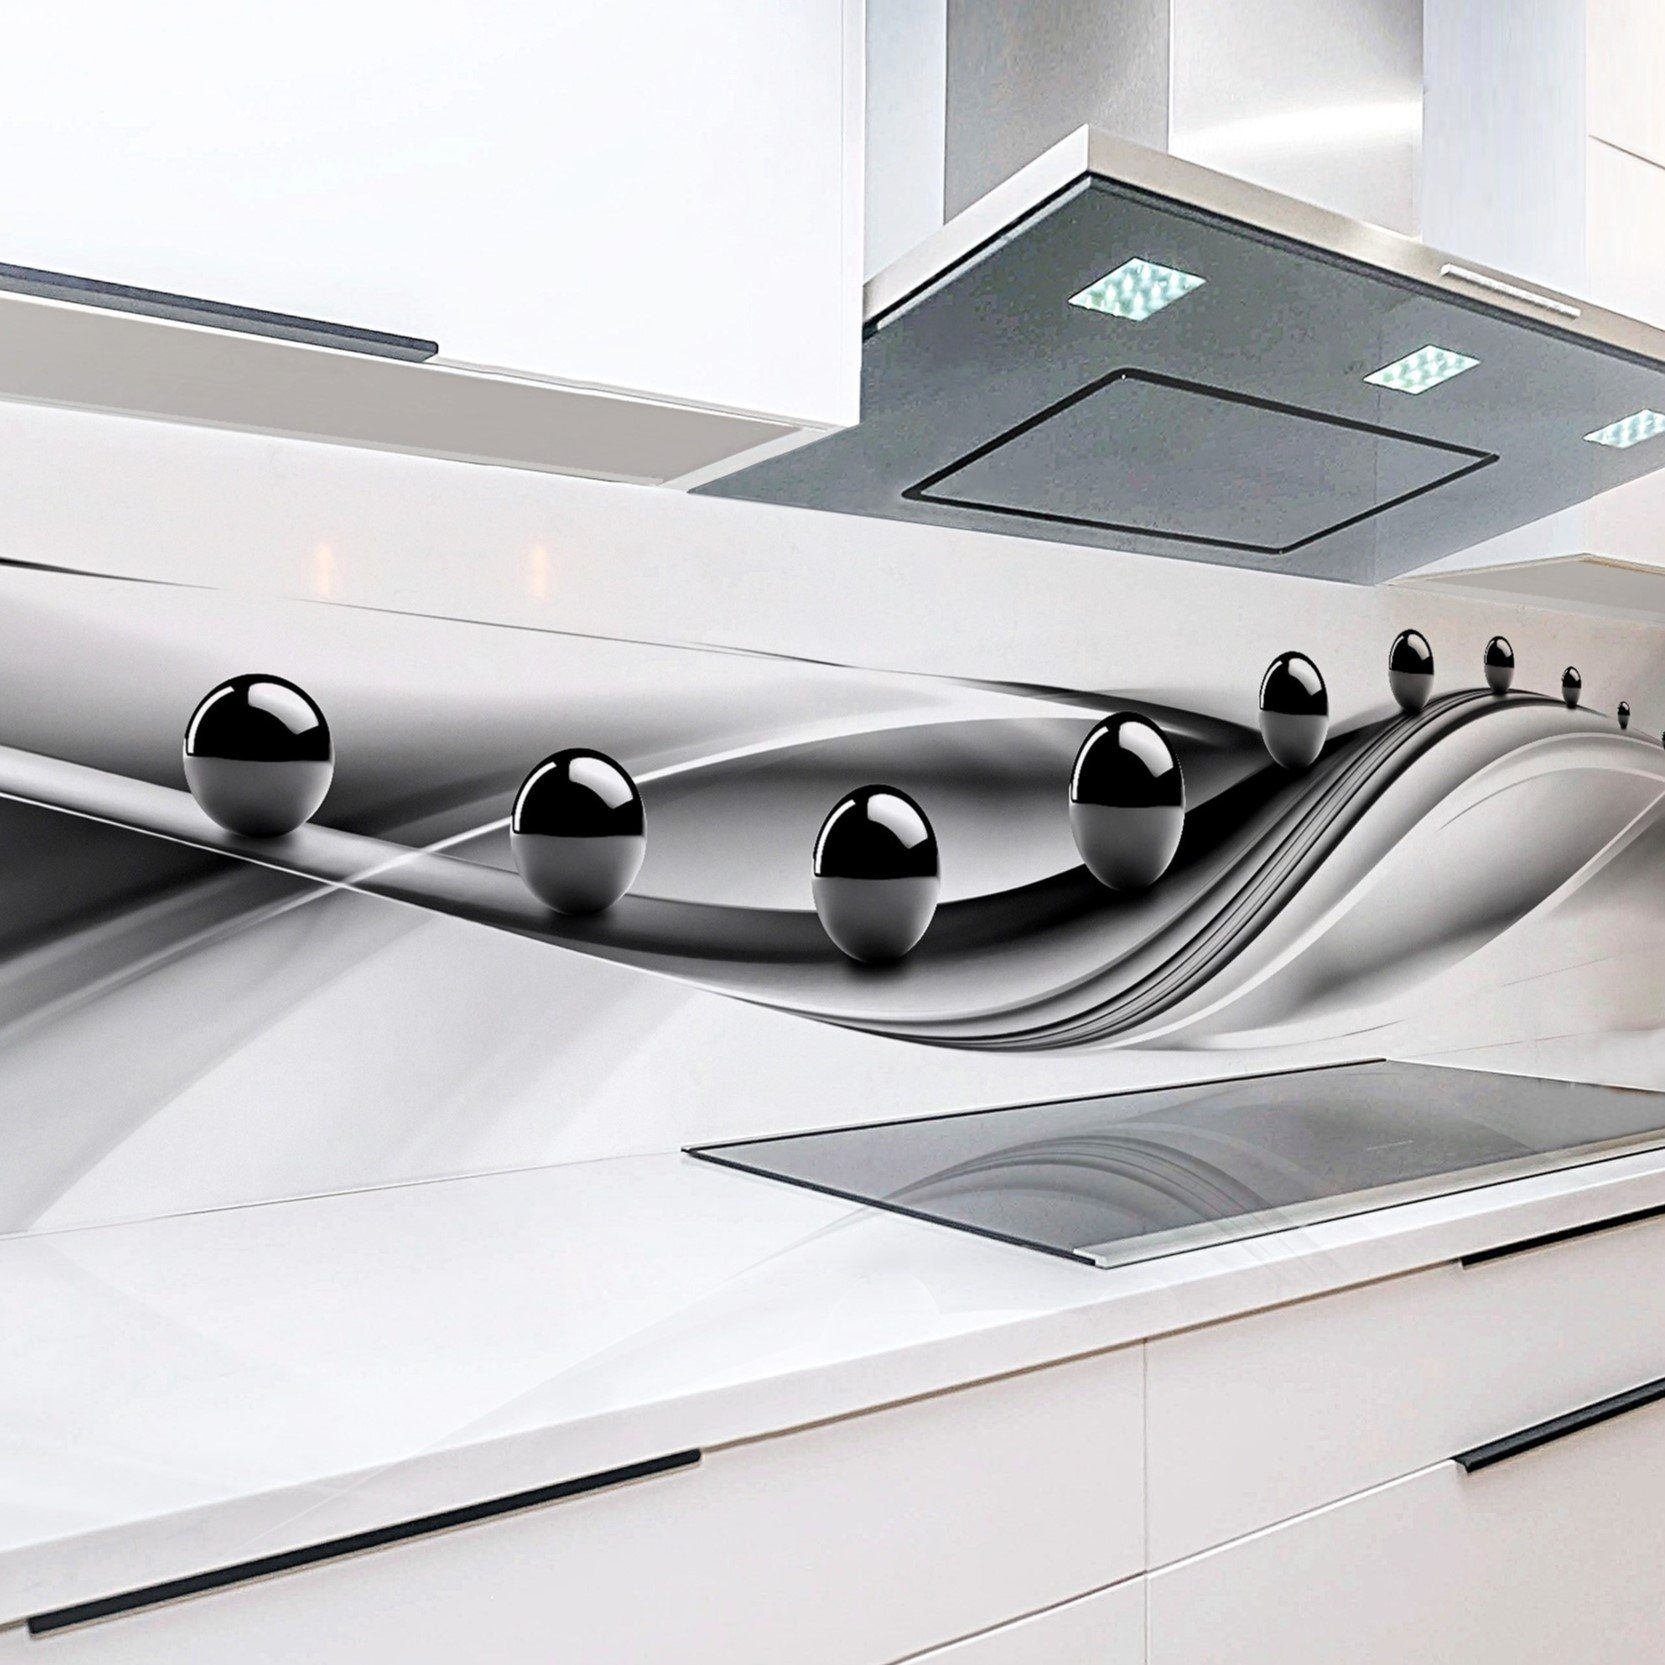 Rodnik Küchenrückwand Schwarze Kugeln, ABS-Kunststoff Platte Monolith in DELUXE Qualität mit Direktdruck | Küchenrückwände